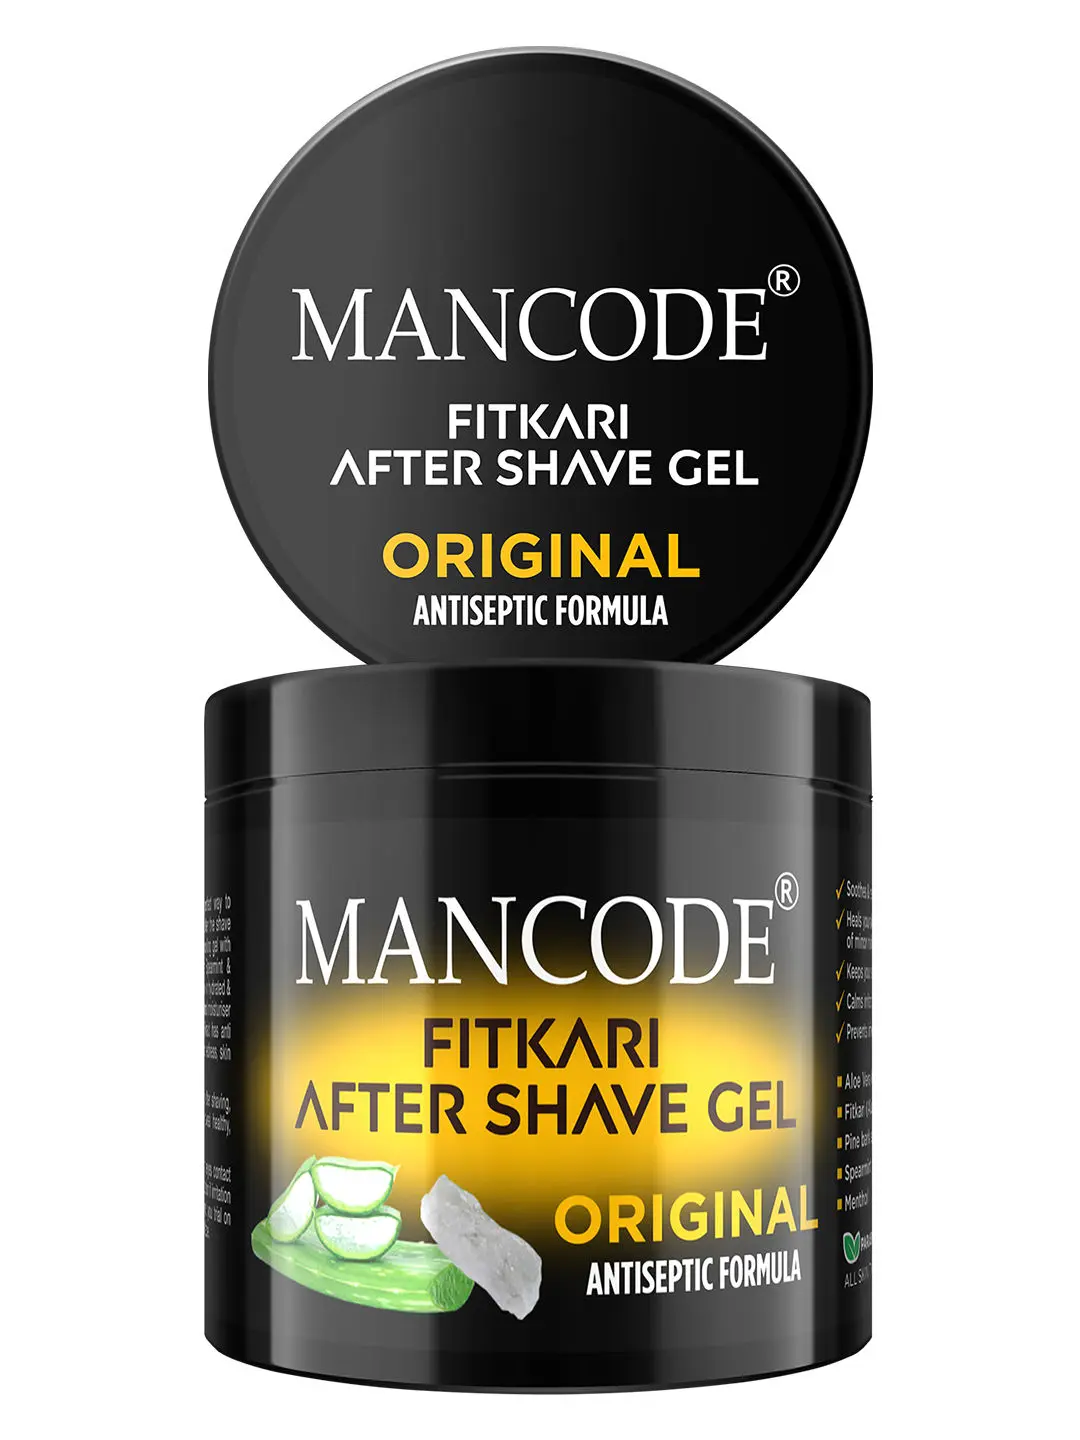 Mancode Fitkari After Shave Gel for Men Original Antiseptic Formula (100 g)